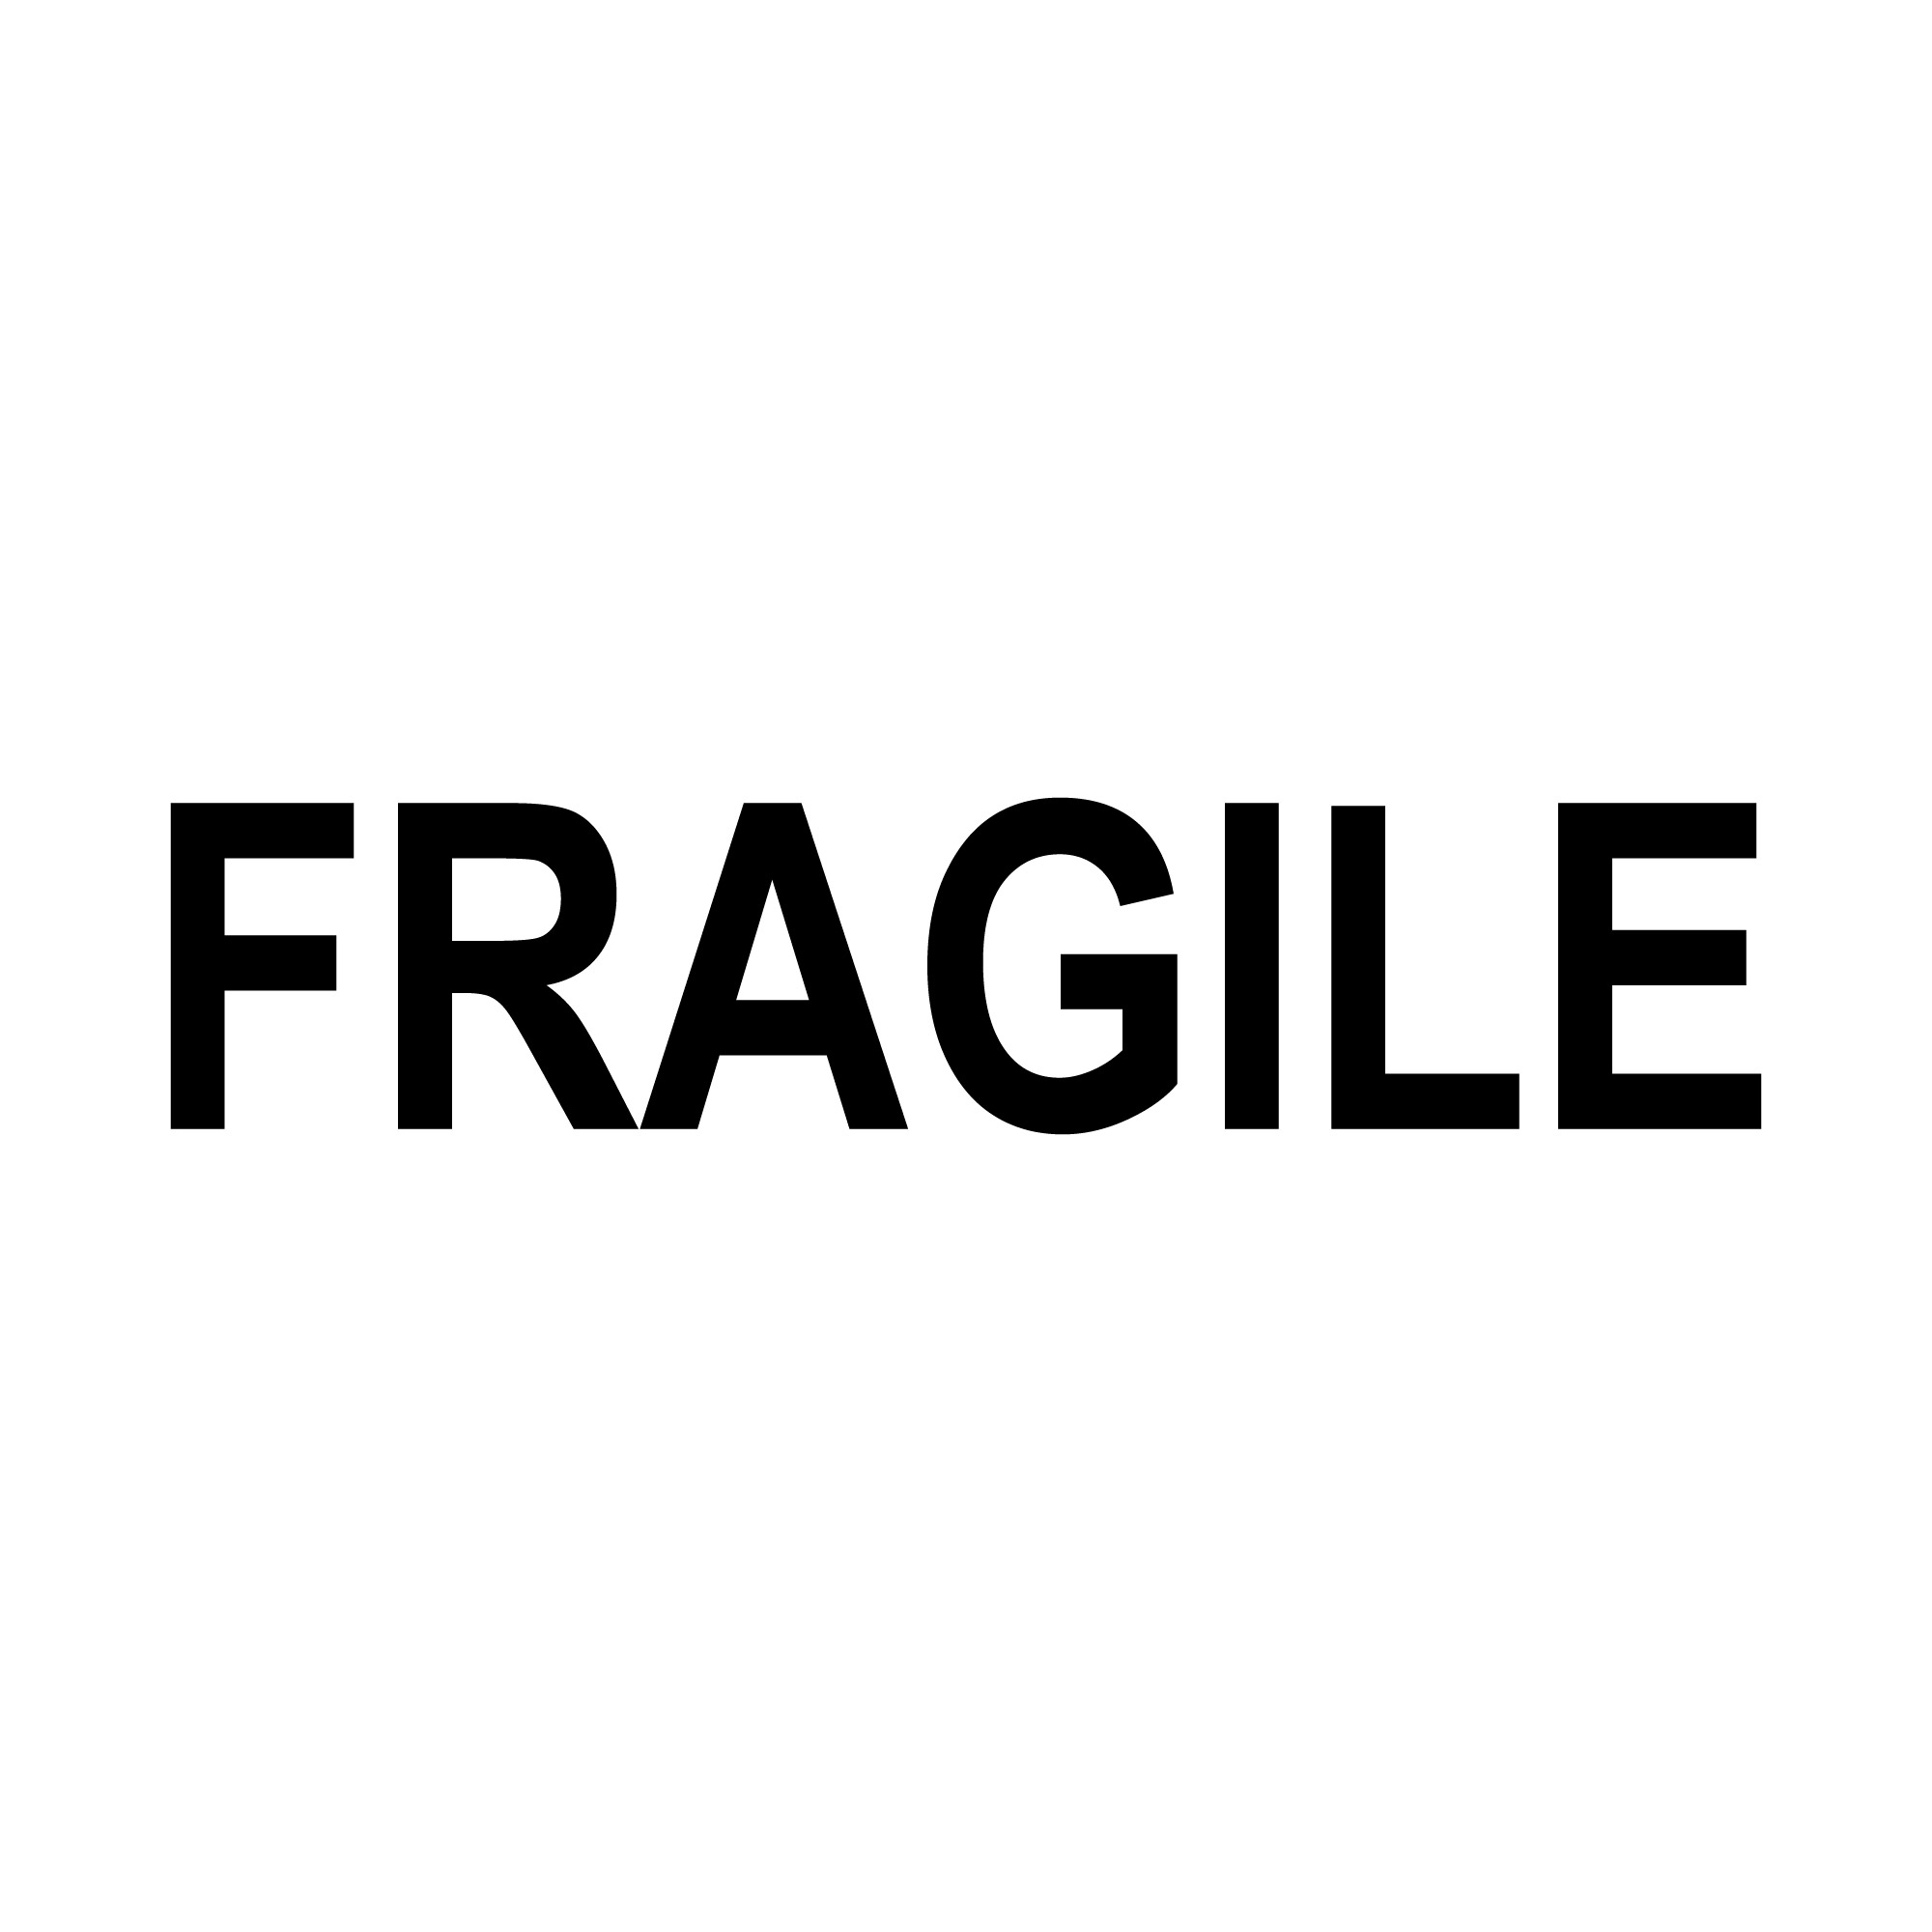 Premium Vector | Fragile icon logo vector design template